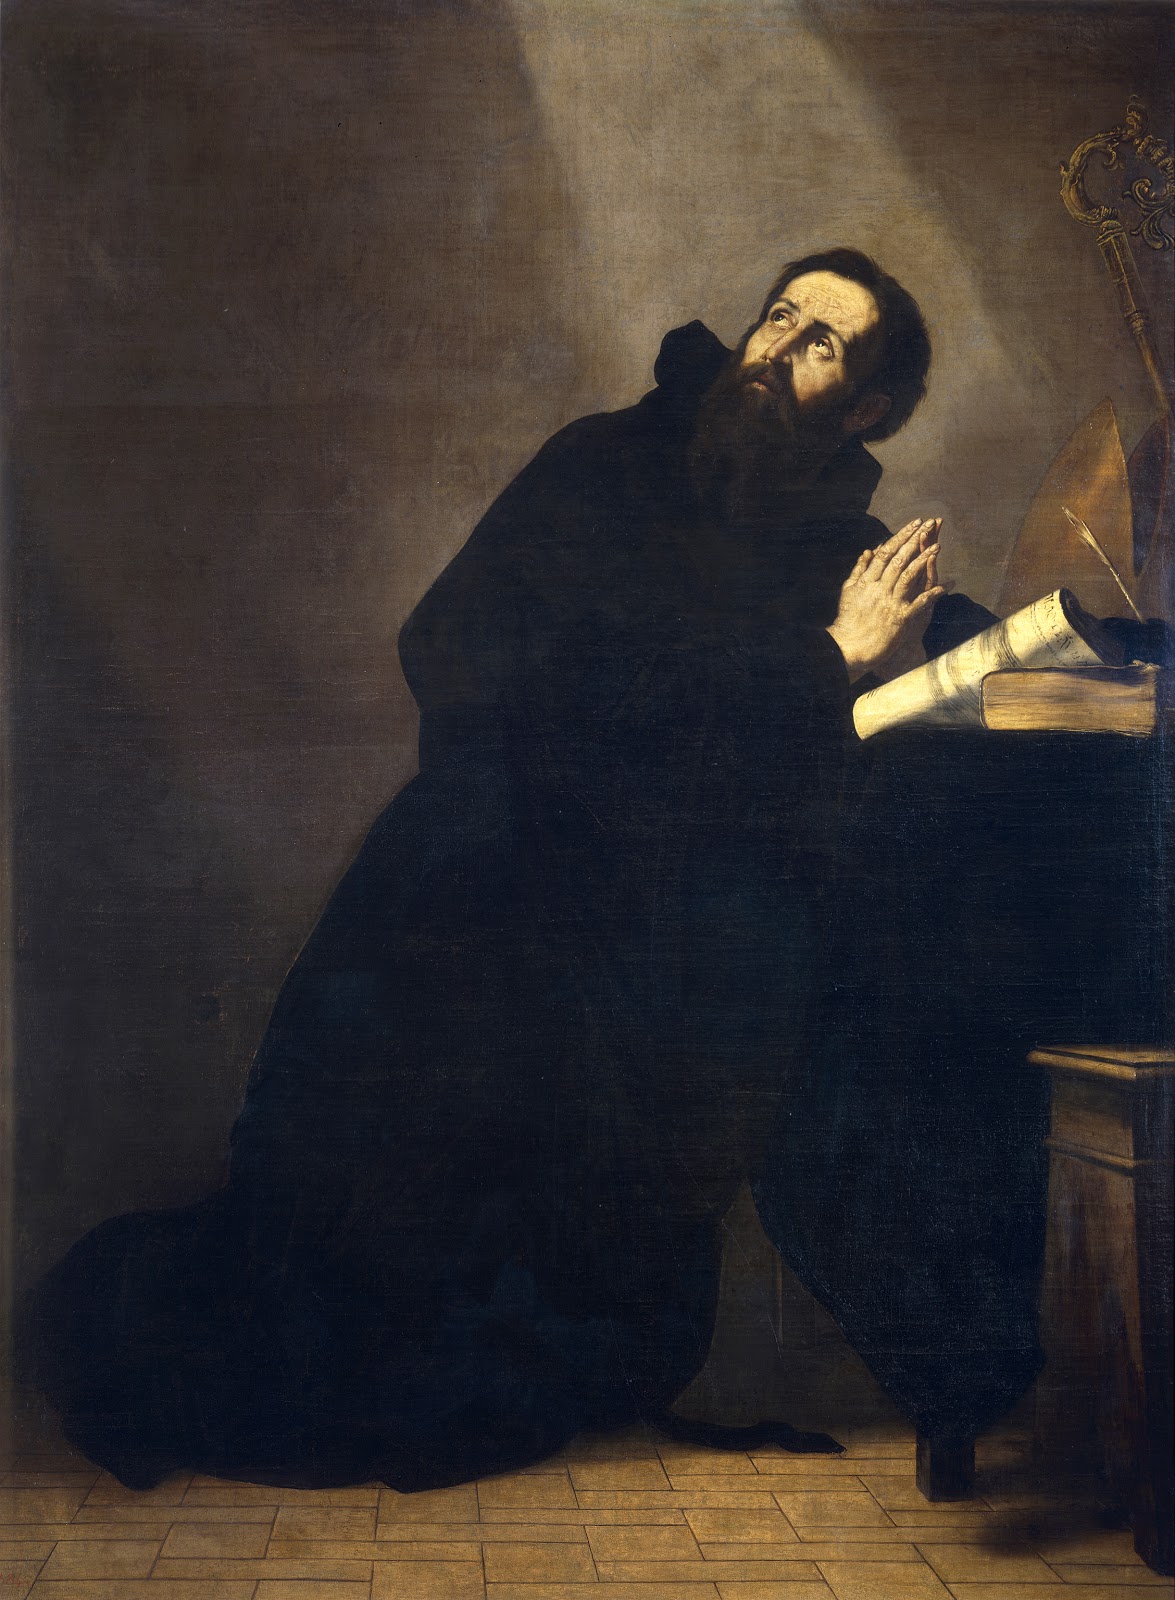 Jusepe+de+Ribera-1591-1652 (44).jpg